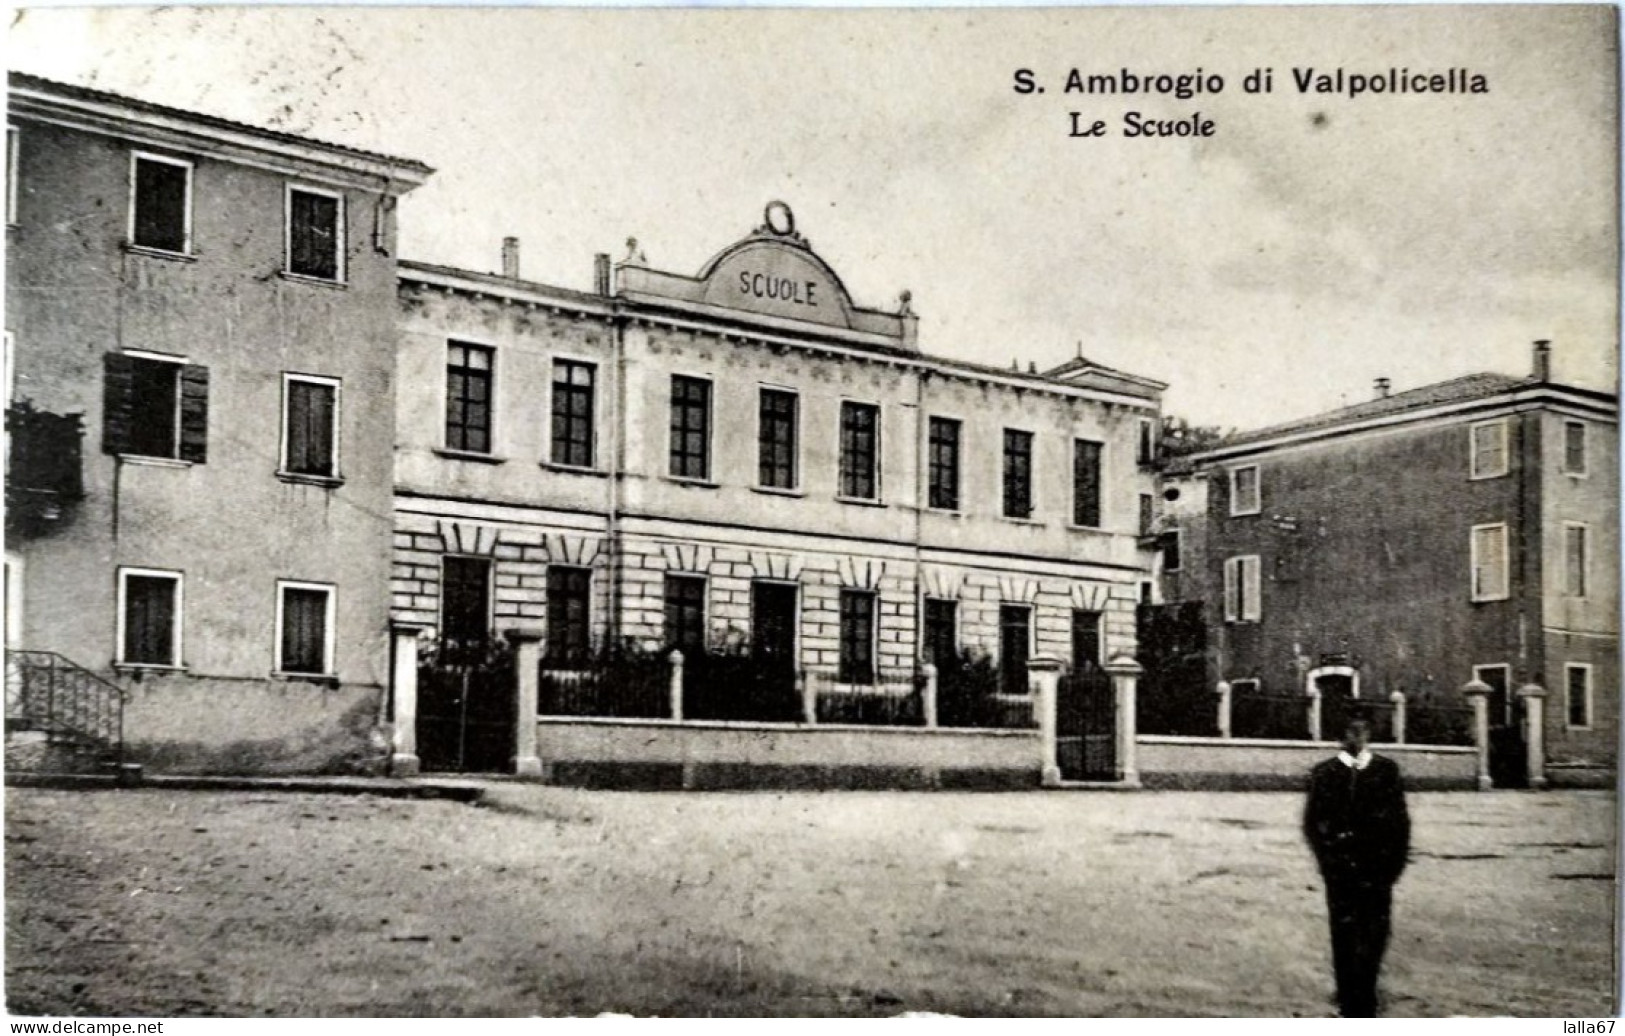 CARTOLINA FORMATO PICCOLO S. AMBROGIO DI VALPOLICELLA - LE SCUOLE - VIAGGIATA N. 8015 - Verona